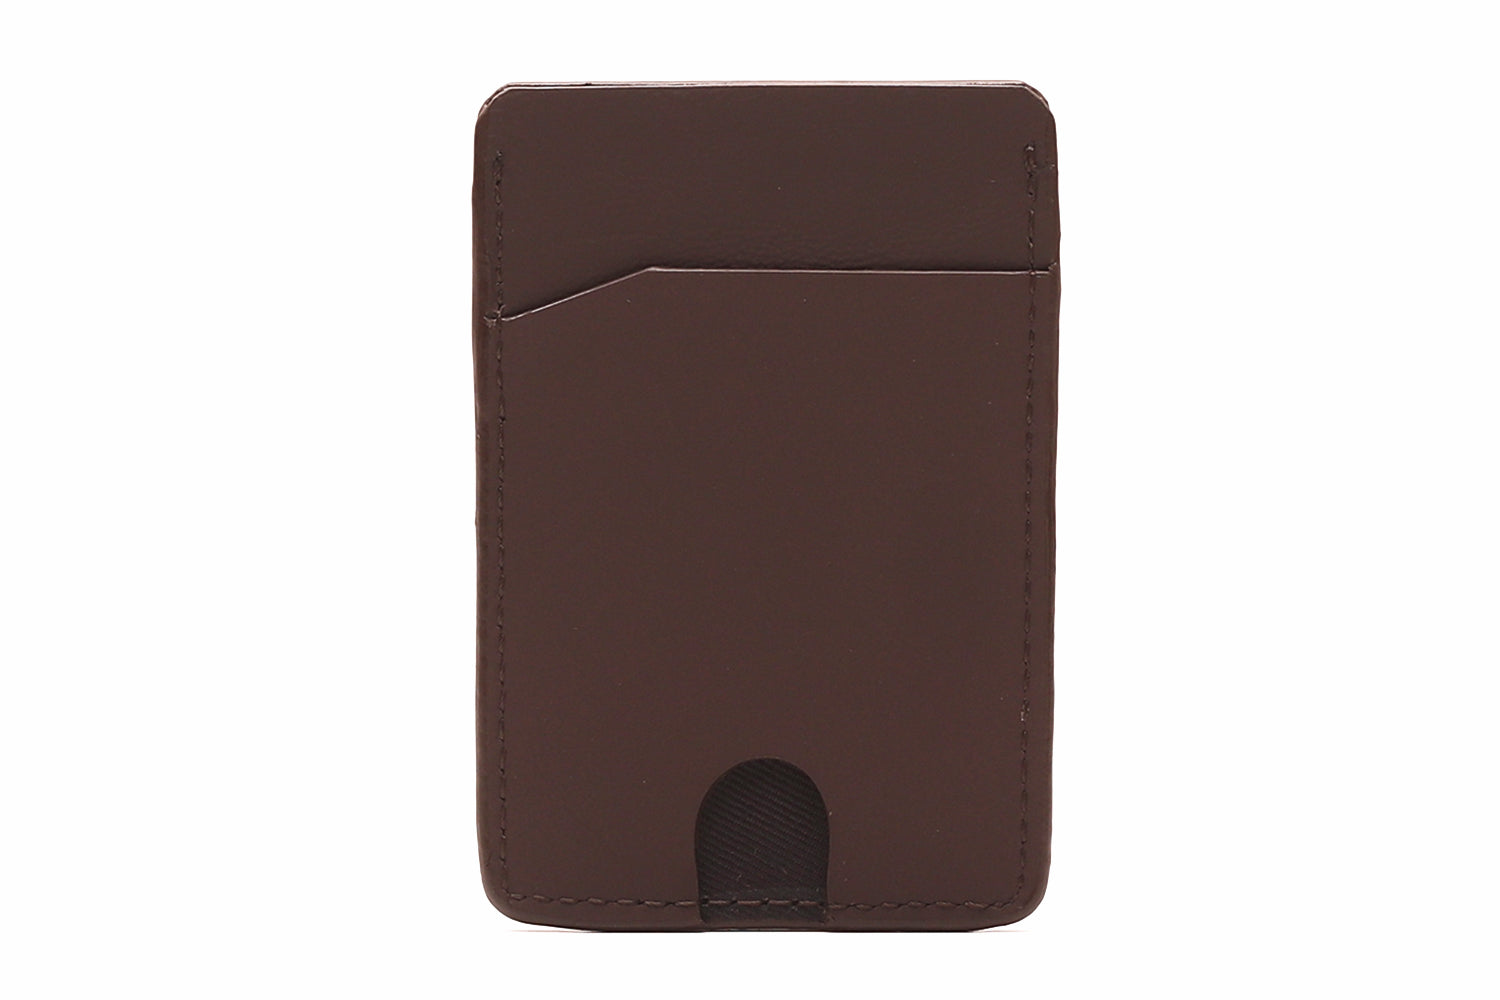 Mens Card Holder, Brown leather ATM wallet